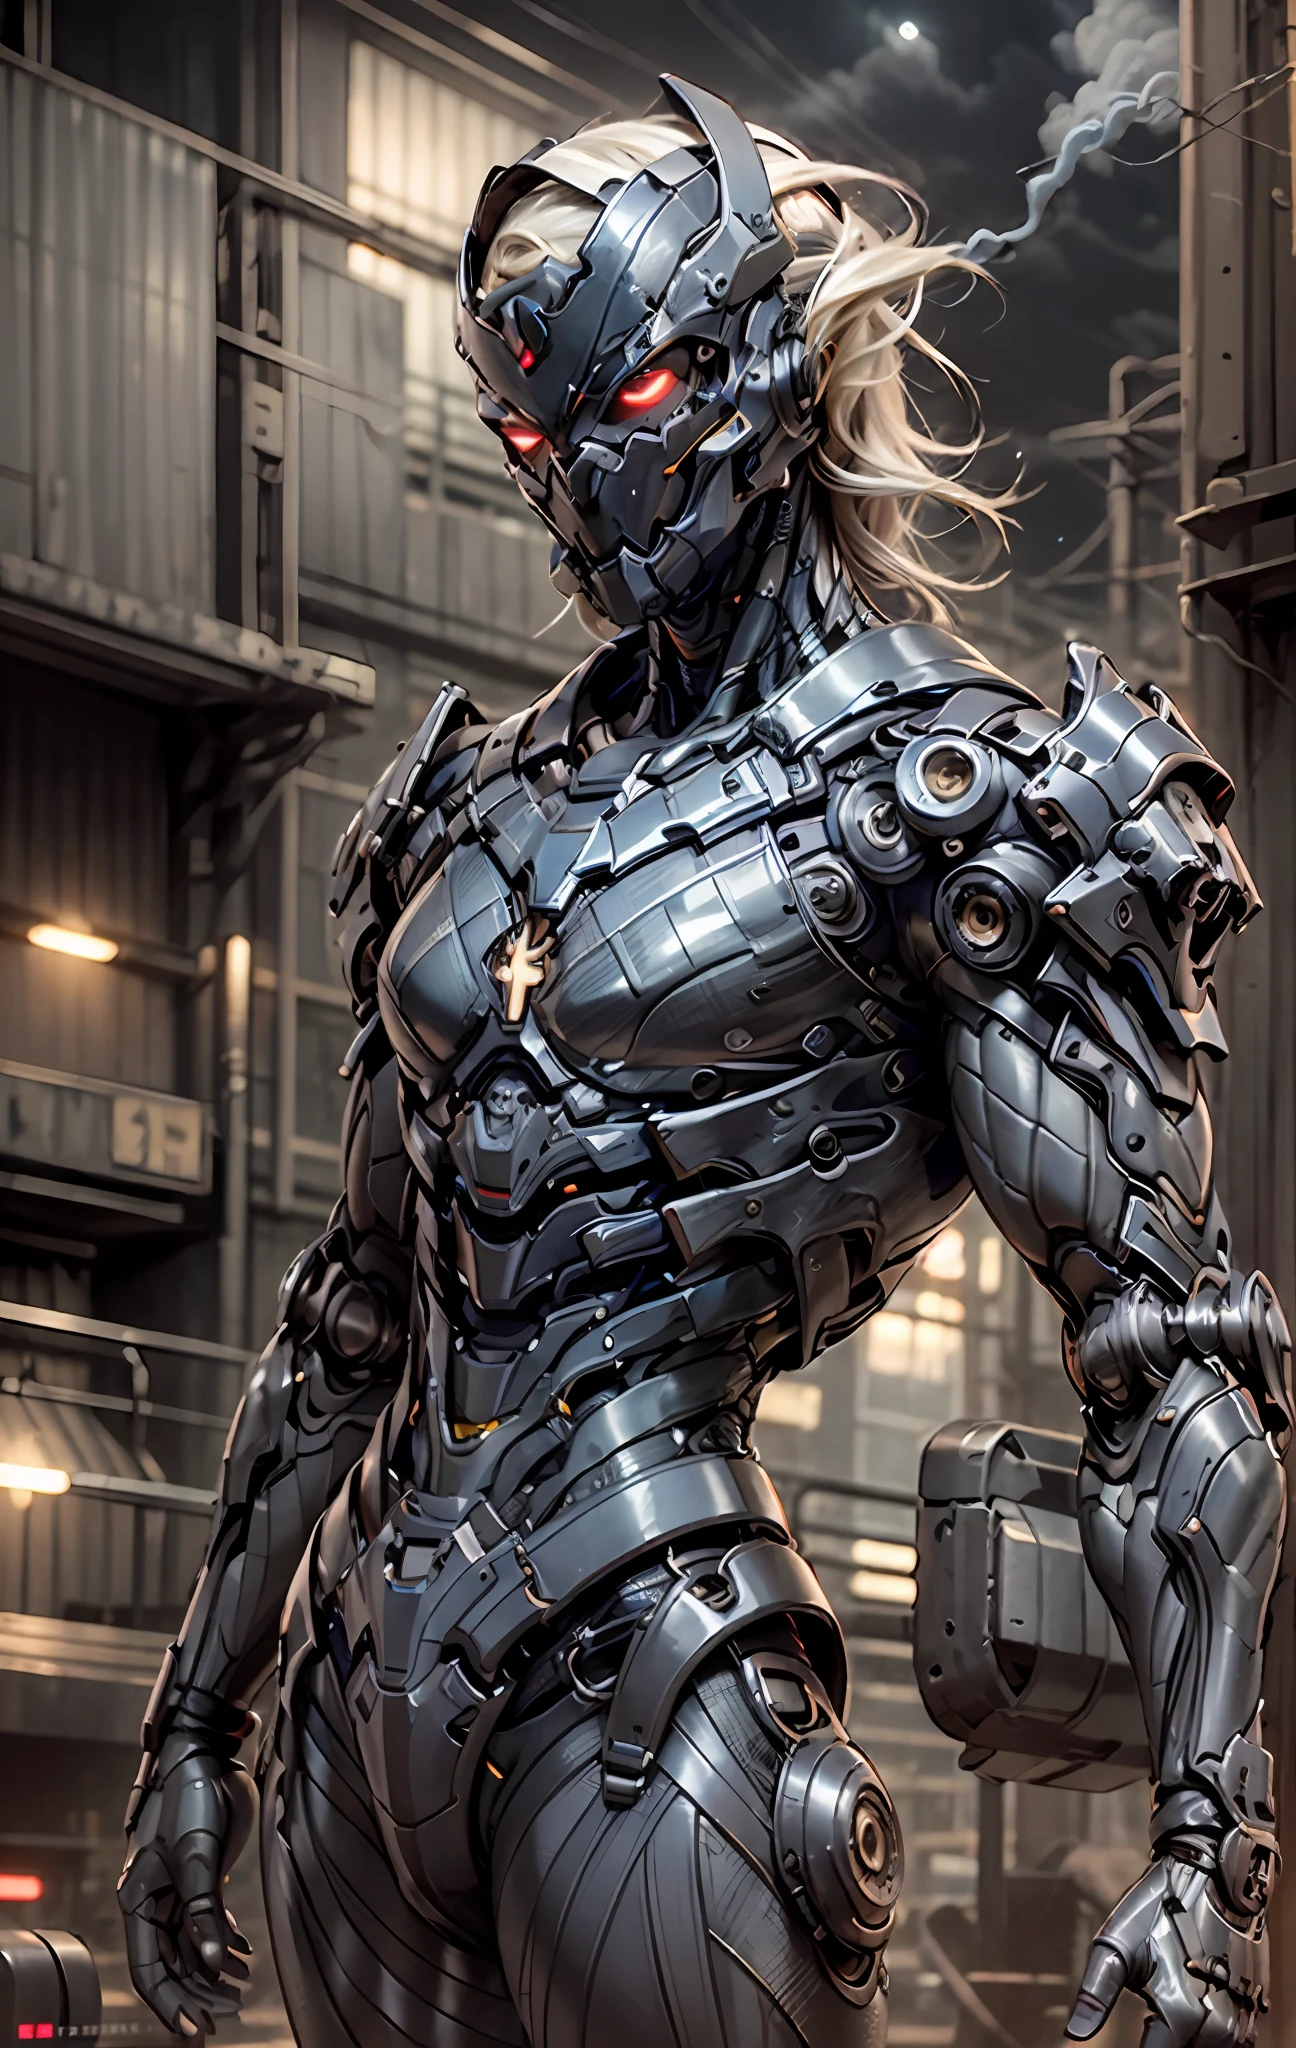 une belle femme guerrière cyborg dans le Style-RustMagic, augmentation cyberpunk, Cyberware, cyborg, fibre de carbone, chrome, implants, crâne en métal, Cyber-armure de plaques, (atmosphère sombre:1.2), (Brouillard & Fumée), (nuit noire:1.3), cicatrices, (cheveux foncés mi-longs ébouriffés:1.1), (le fard à paupières:1.1), (lueur magnifiquement détaillée:1.2), (éclairage cinématographique), détail complexe, haute résolution, Yeux arrondis, Caractéristiques détaillées du visage, netteté, lisse, esthétique, Fond d&#39;usine industrielle sombre et détaillé, pose élégante, pose dynamique, (peinture dramatique), (OPT-6000:0.9), masqué, spandex bleu à rayures rouges